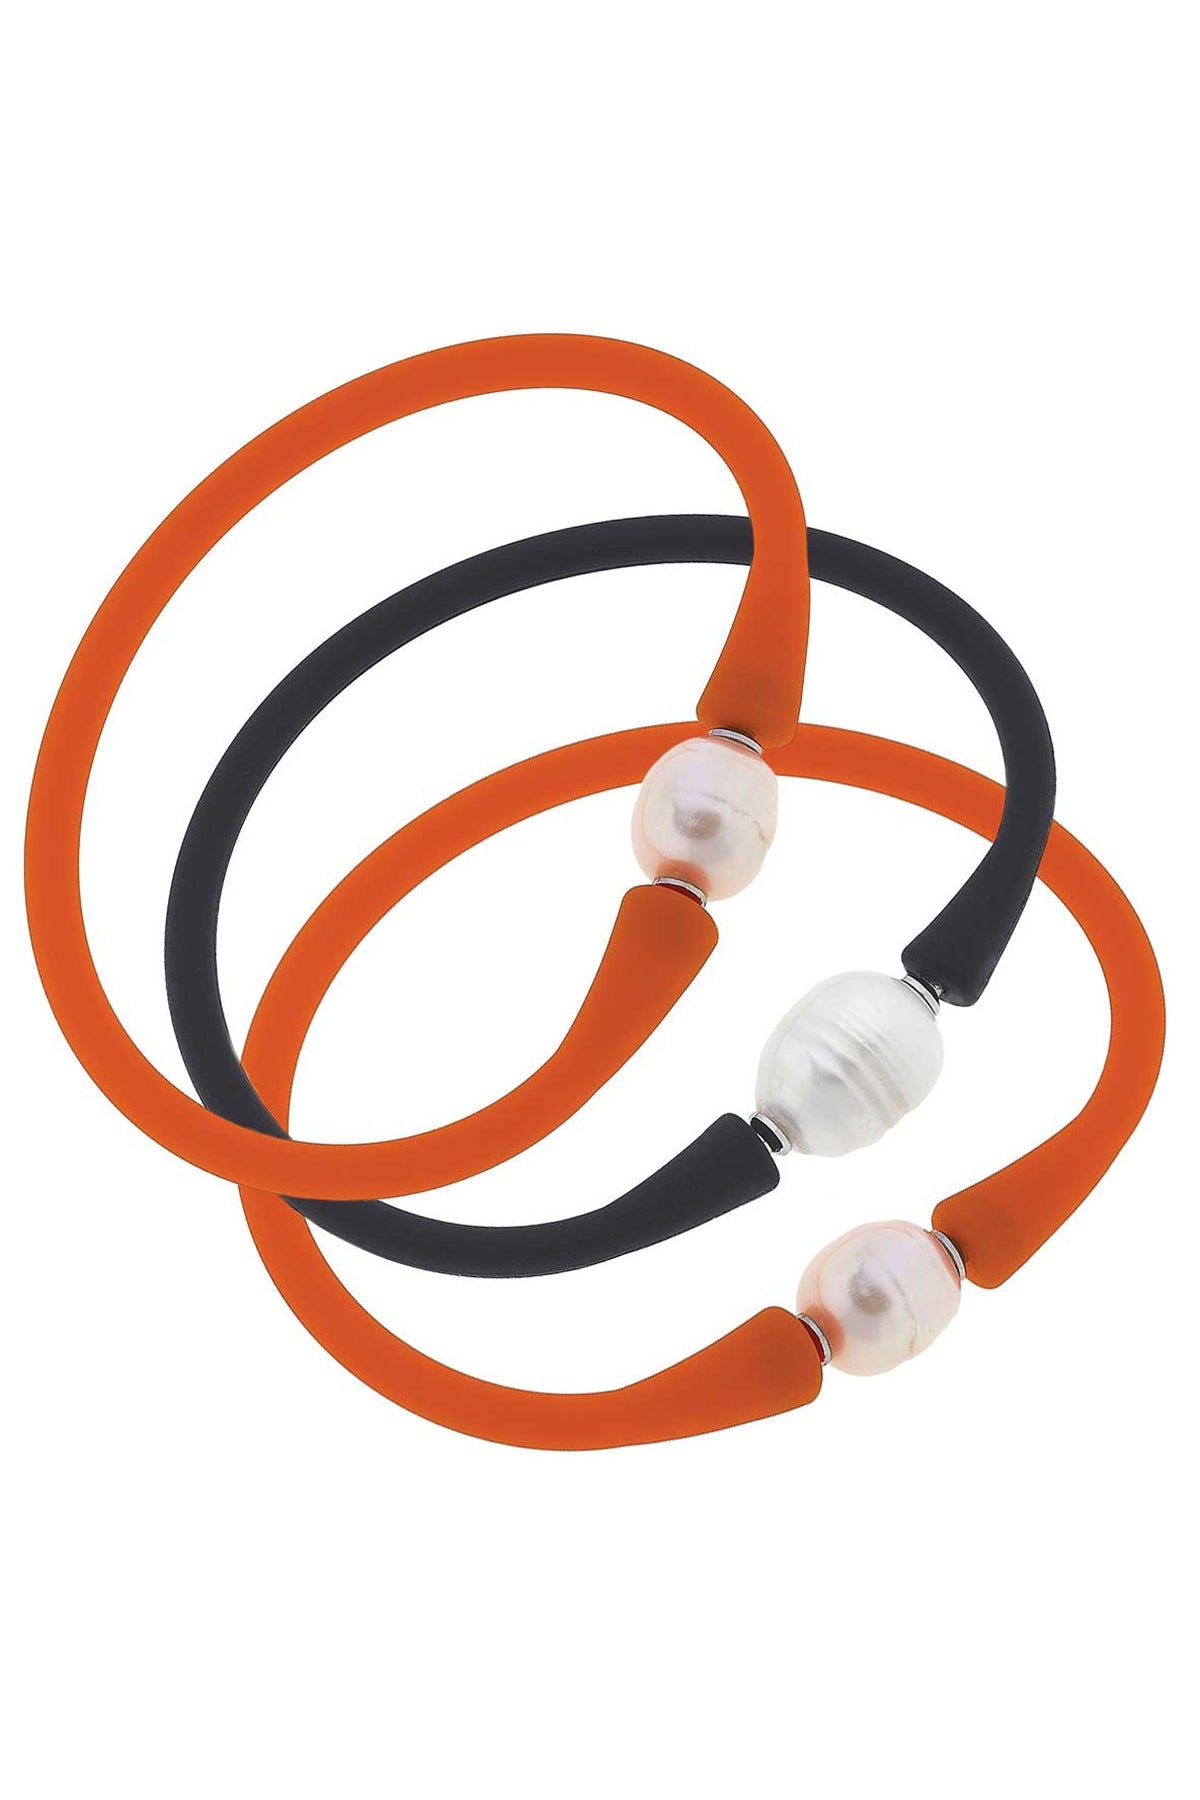 Bali Game Day Bracelet Set of 3 in Orange & Black